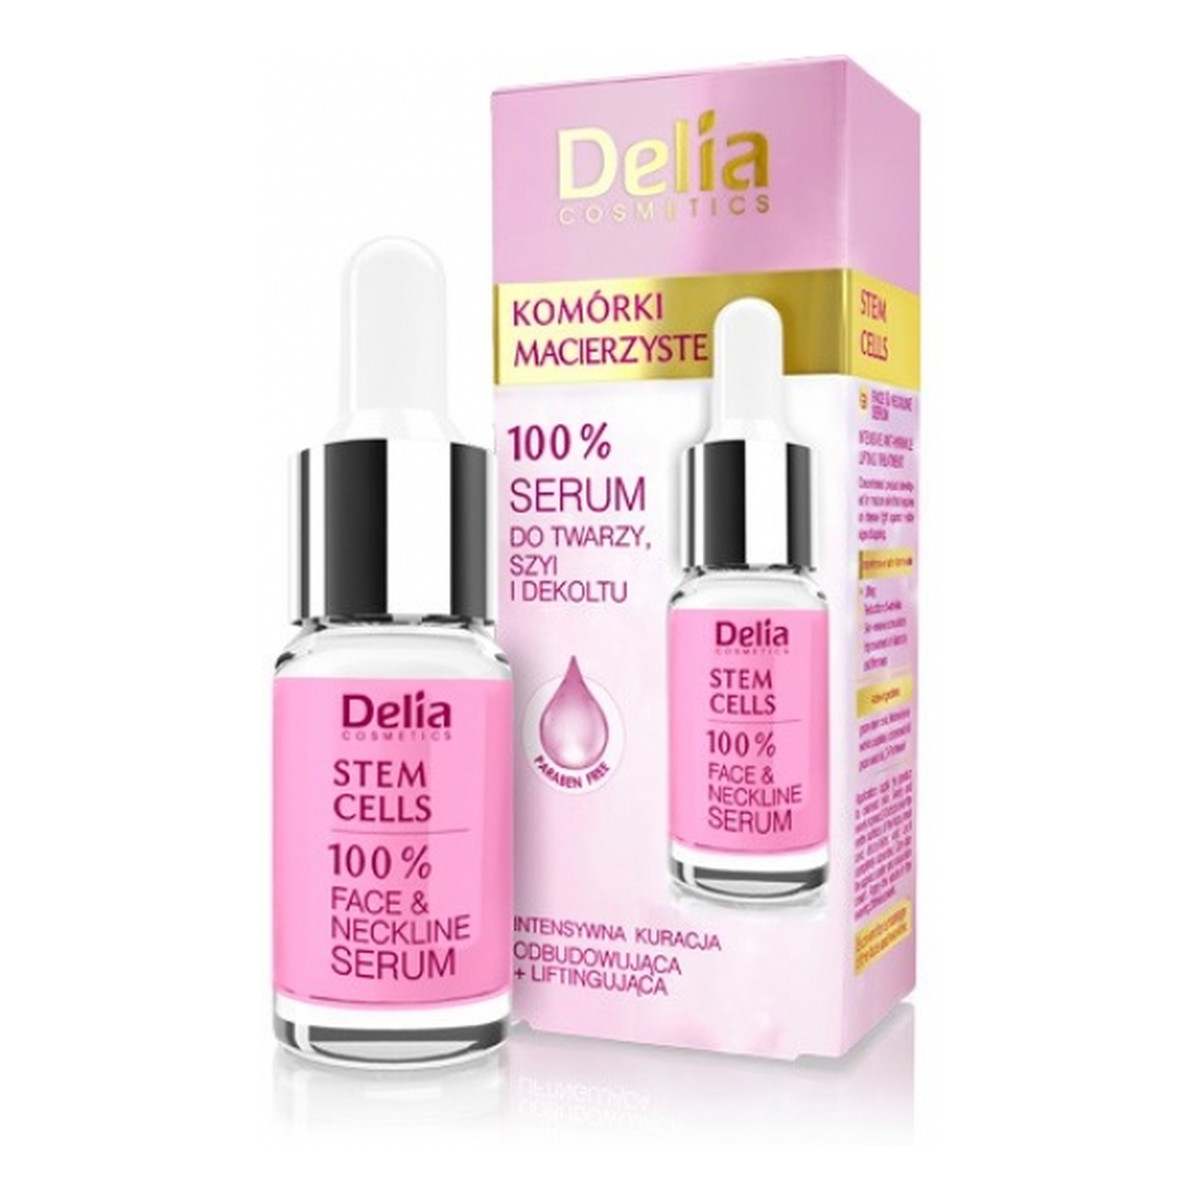 Delia 100% Stem Cells Serum do twarzy,szyi i dekoltu Komórki Macierzyste 10ml